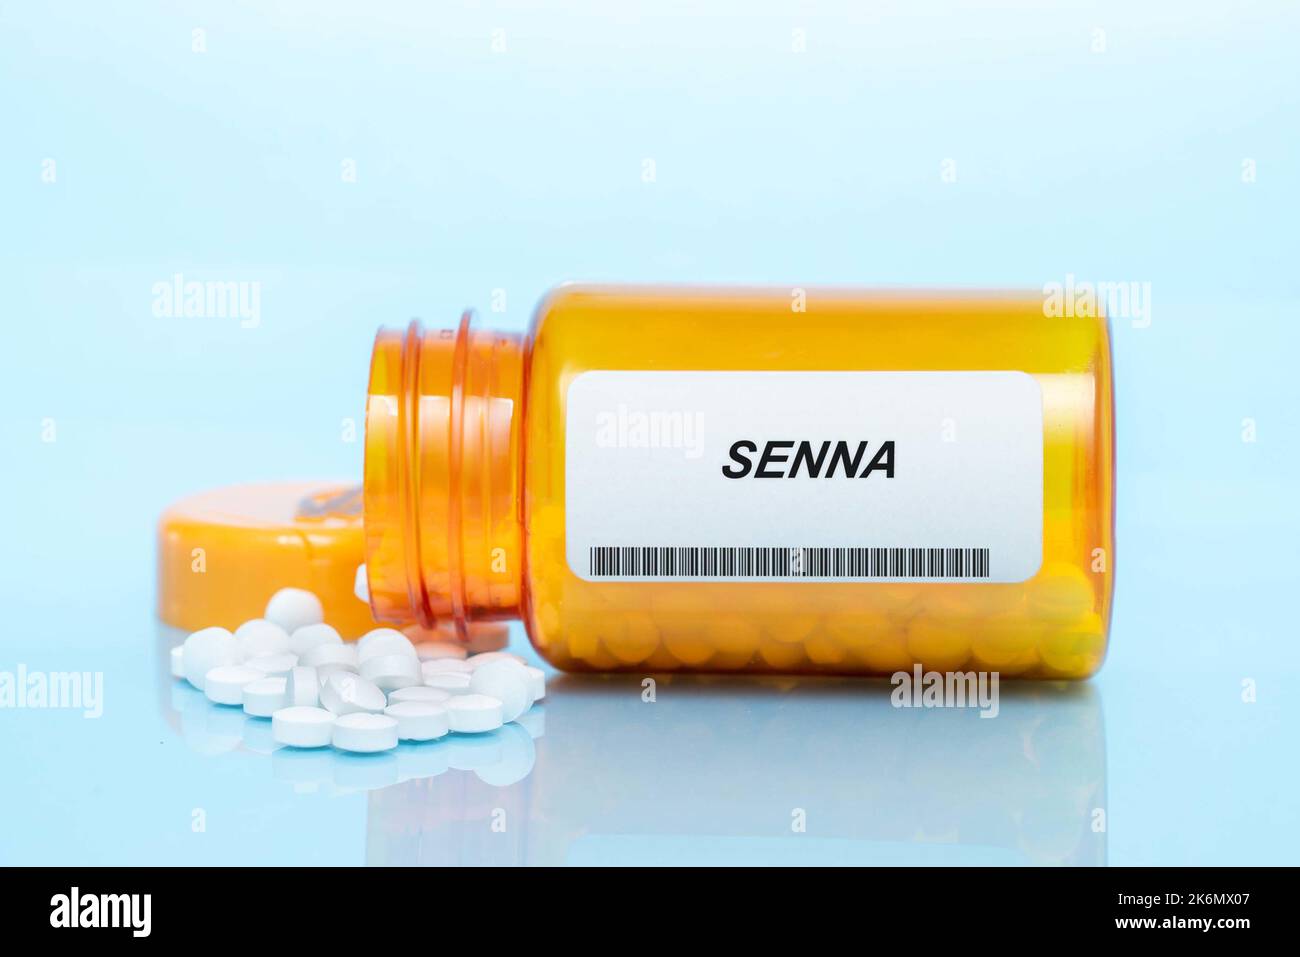 Senna pill bottle, conceptual image Stock Photo